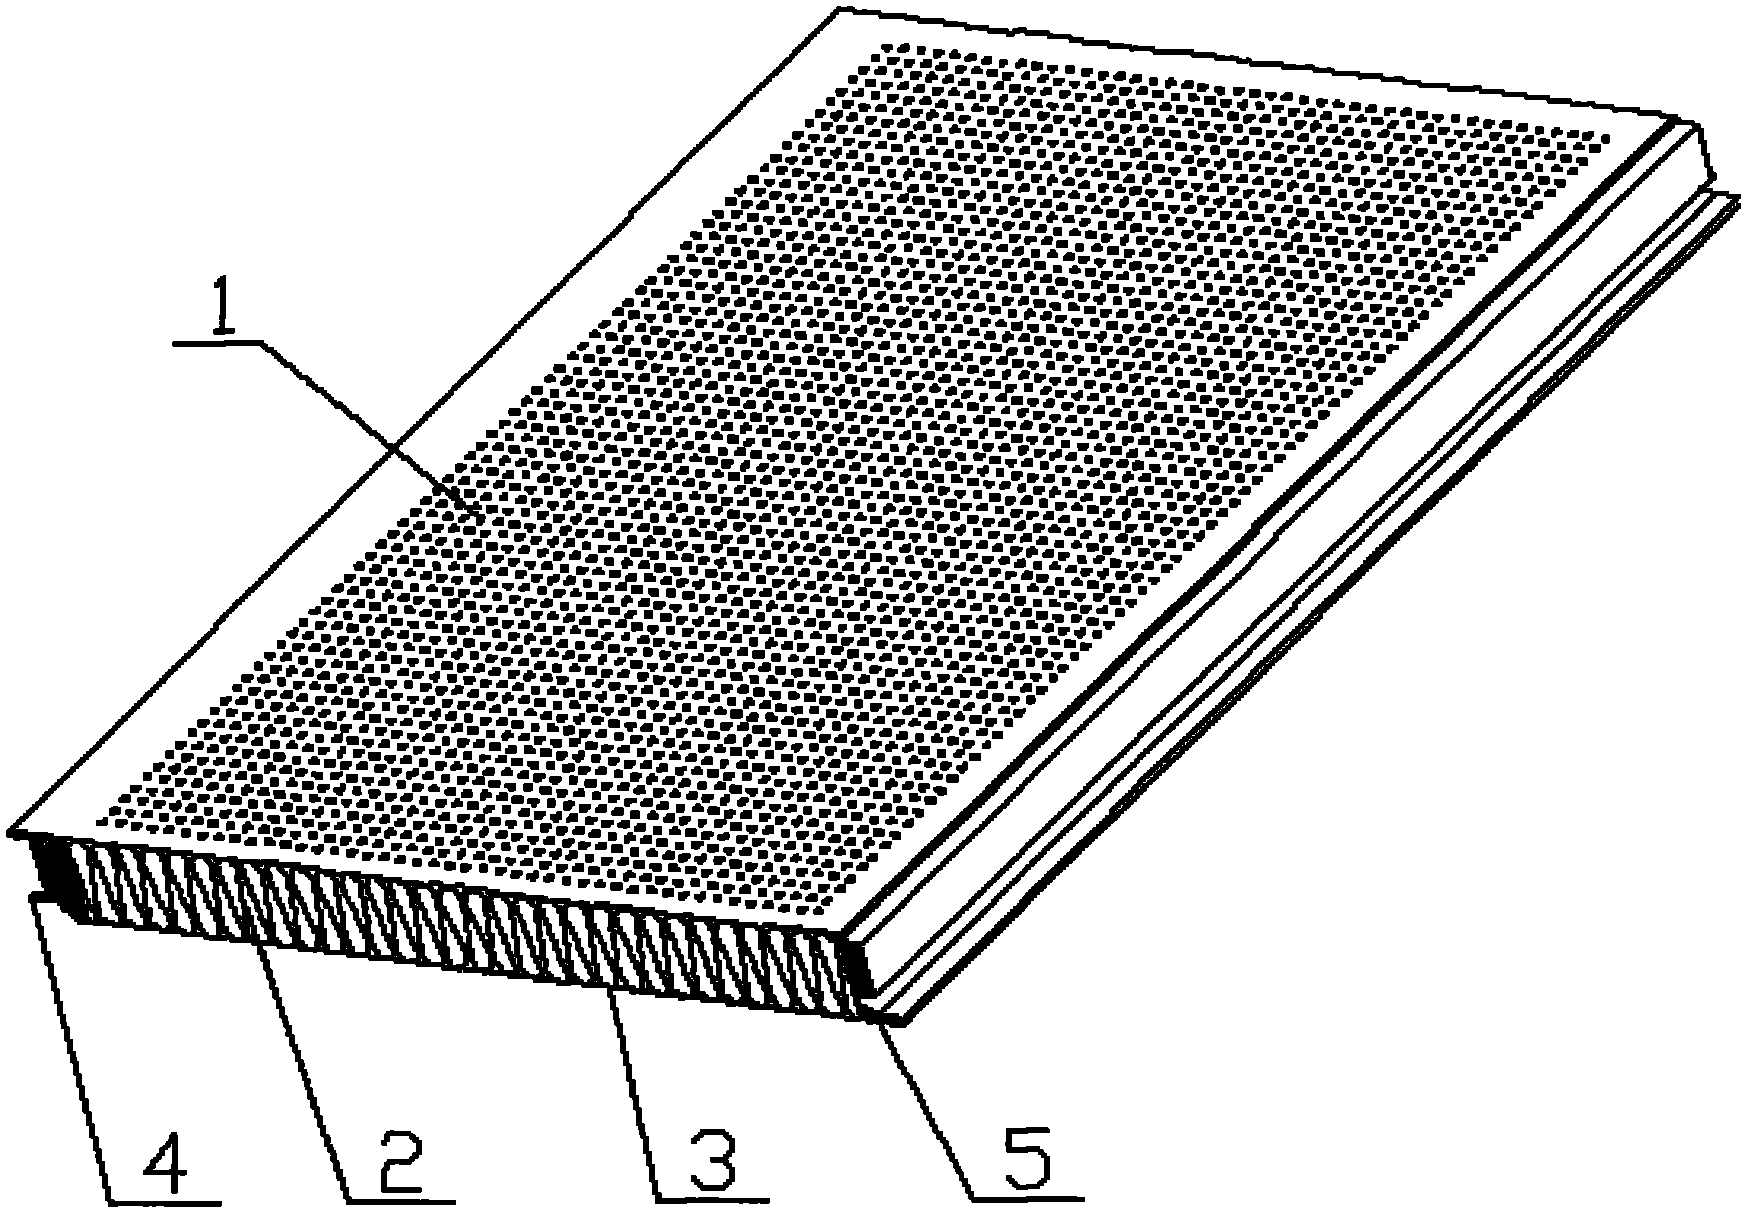 Compound sound insulation-absorption barrier board